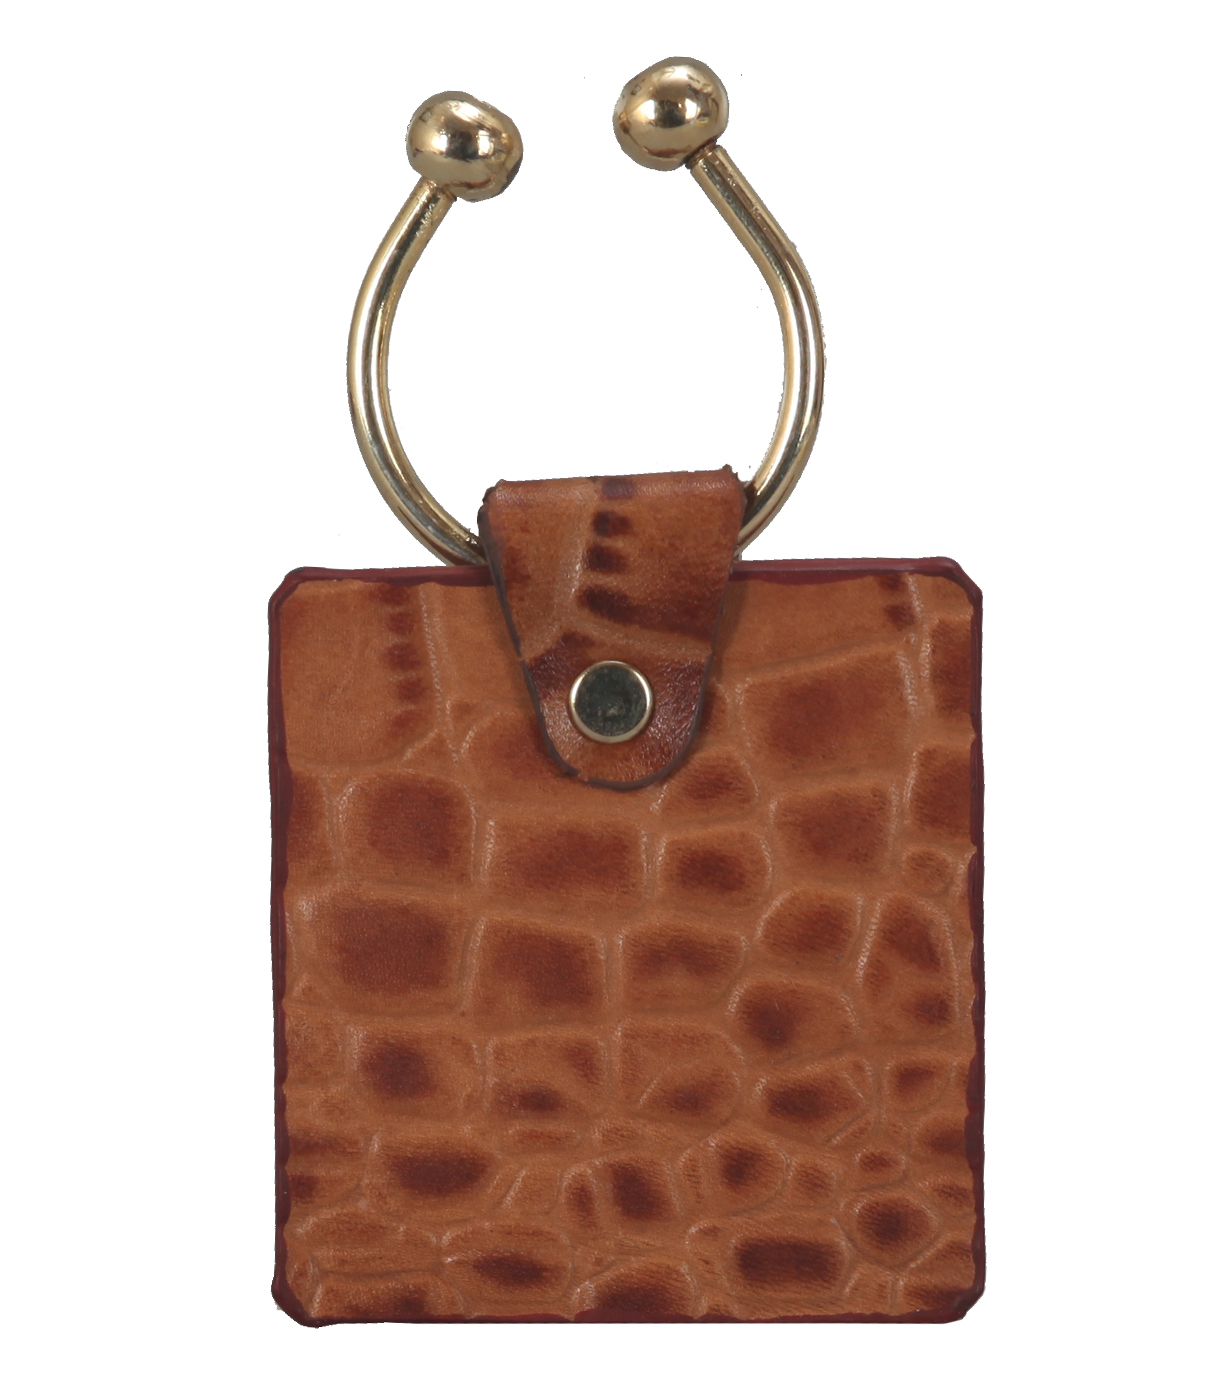 W269--Key holder with knob screw key fitting in Genuine Leather - Tan